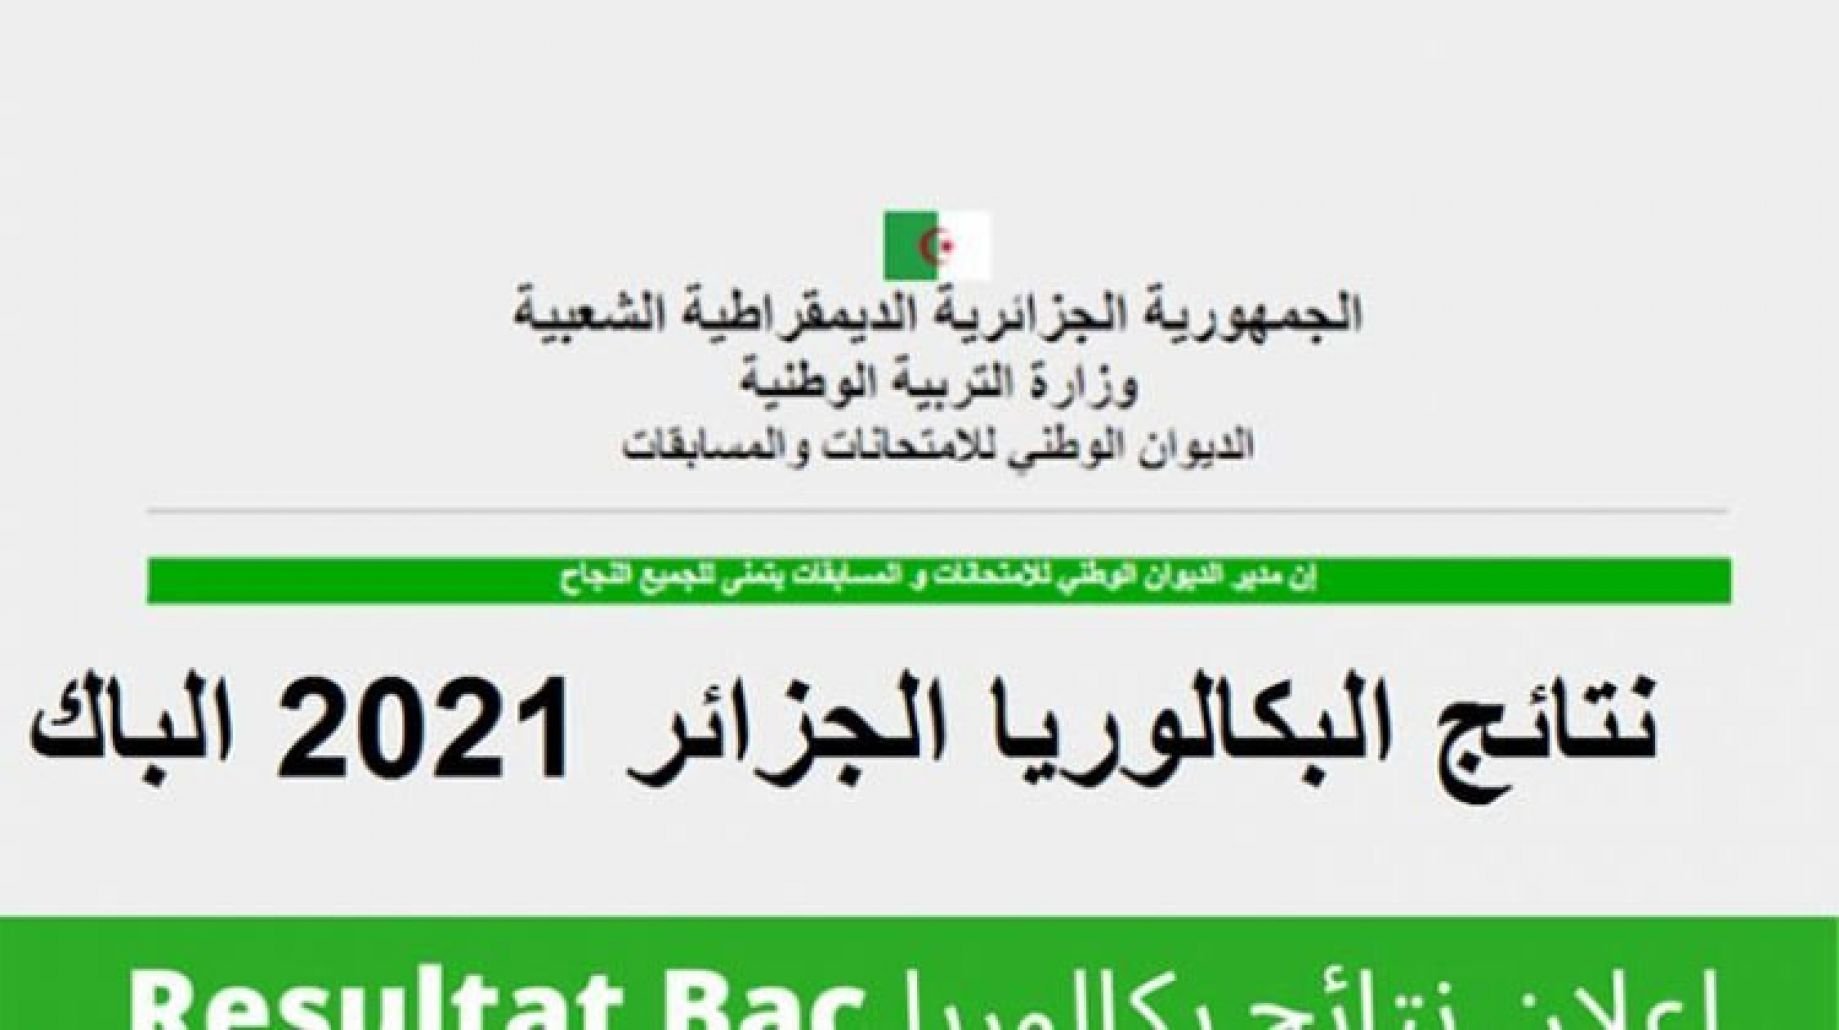 رابط نتائج امتحانات البكالوريا في الجزائر لعام 2022 من موقع الديوان الوطني للامتحانات والمسابقات